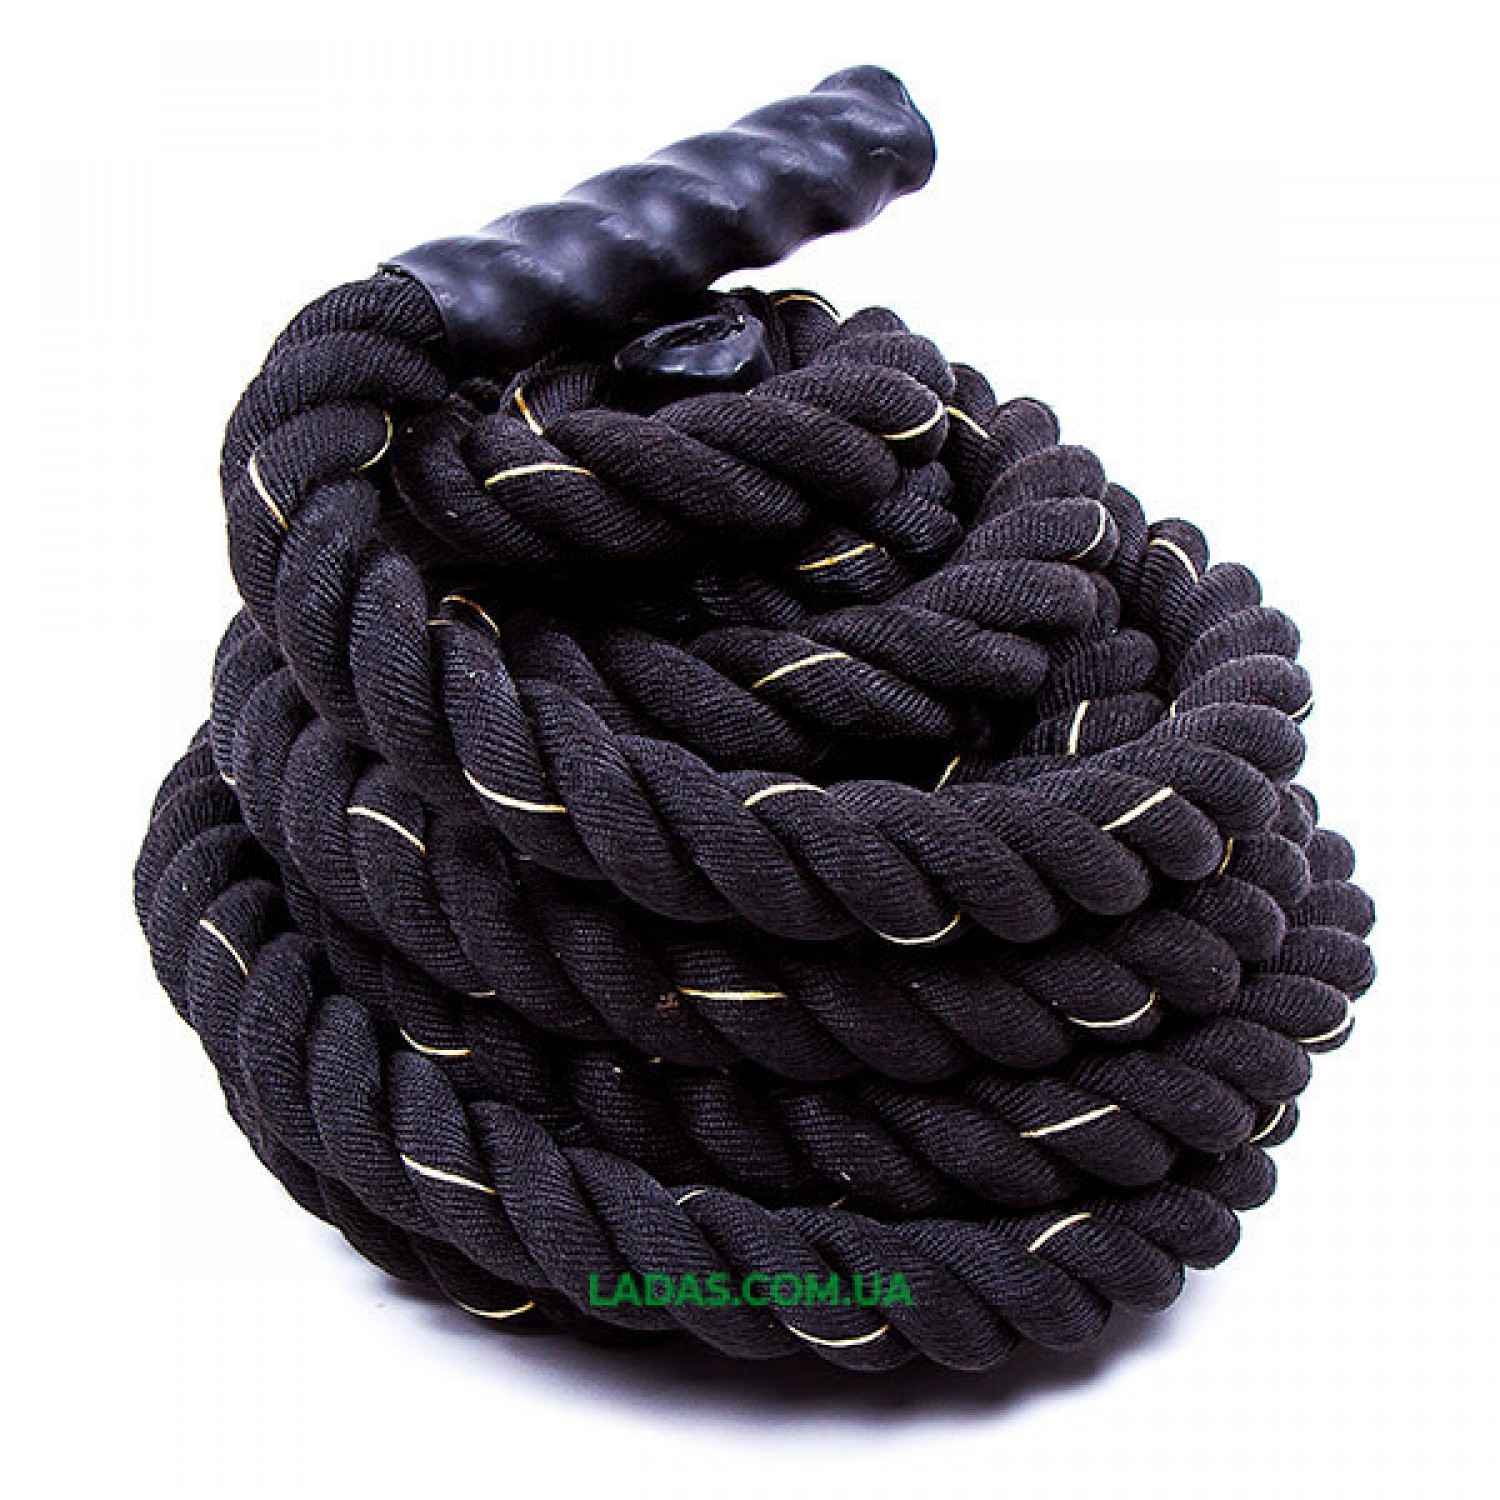 Канат для кроссфита черный Battle Rope (полипропилен, длина 12м, диаметр 5 см)